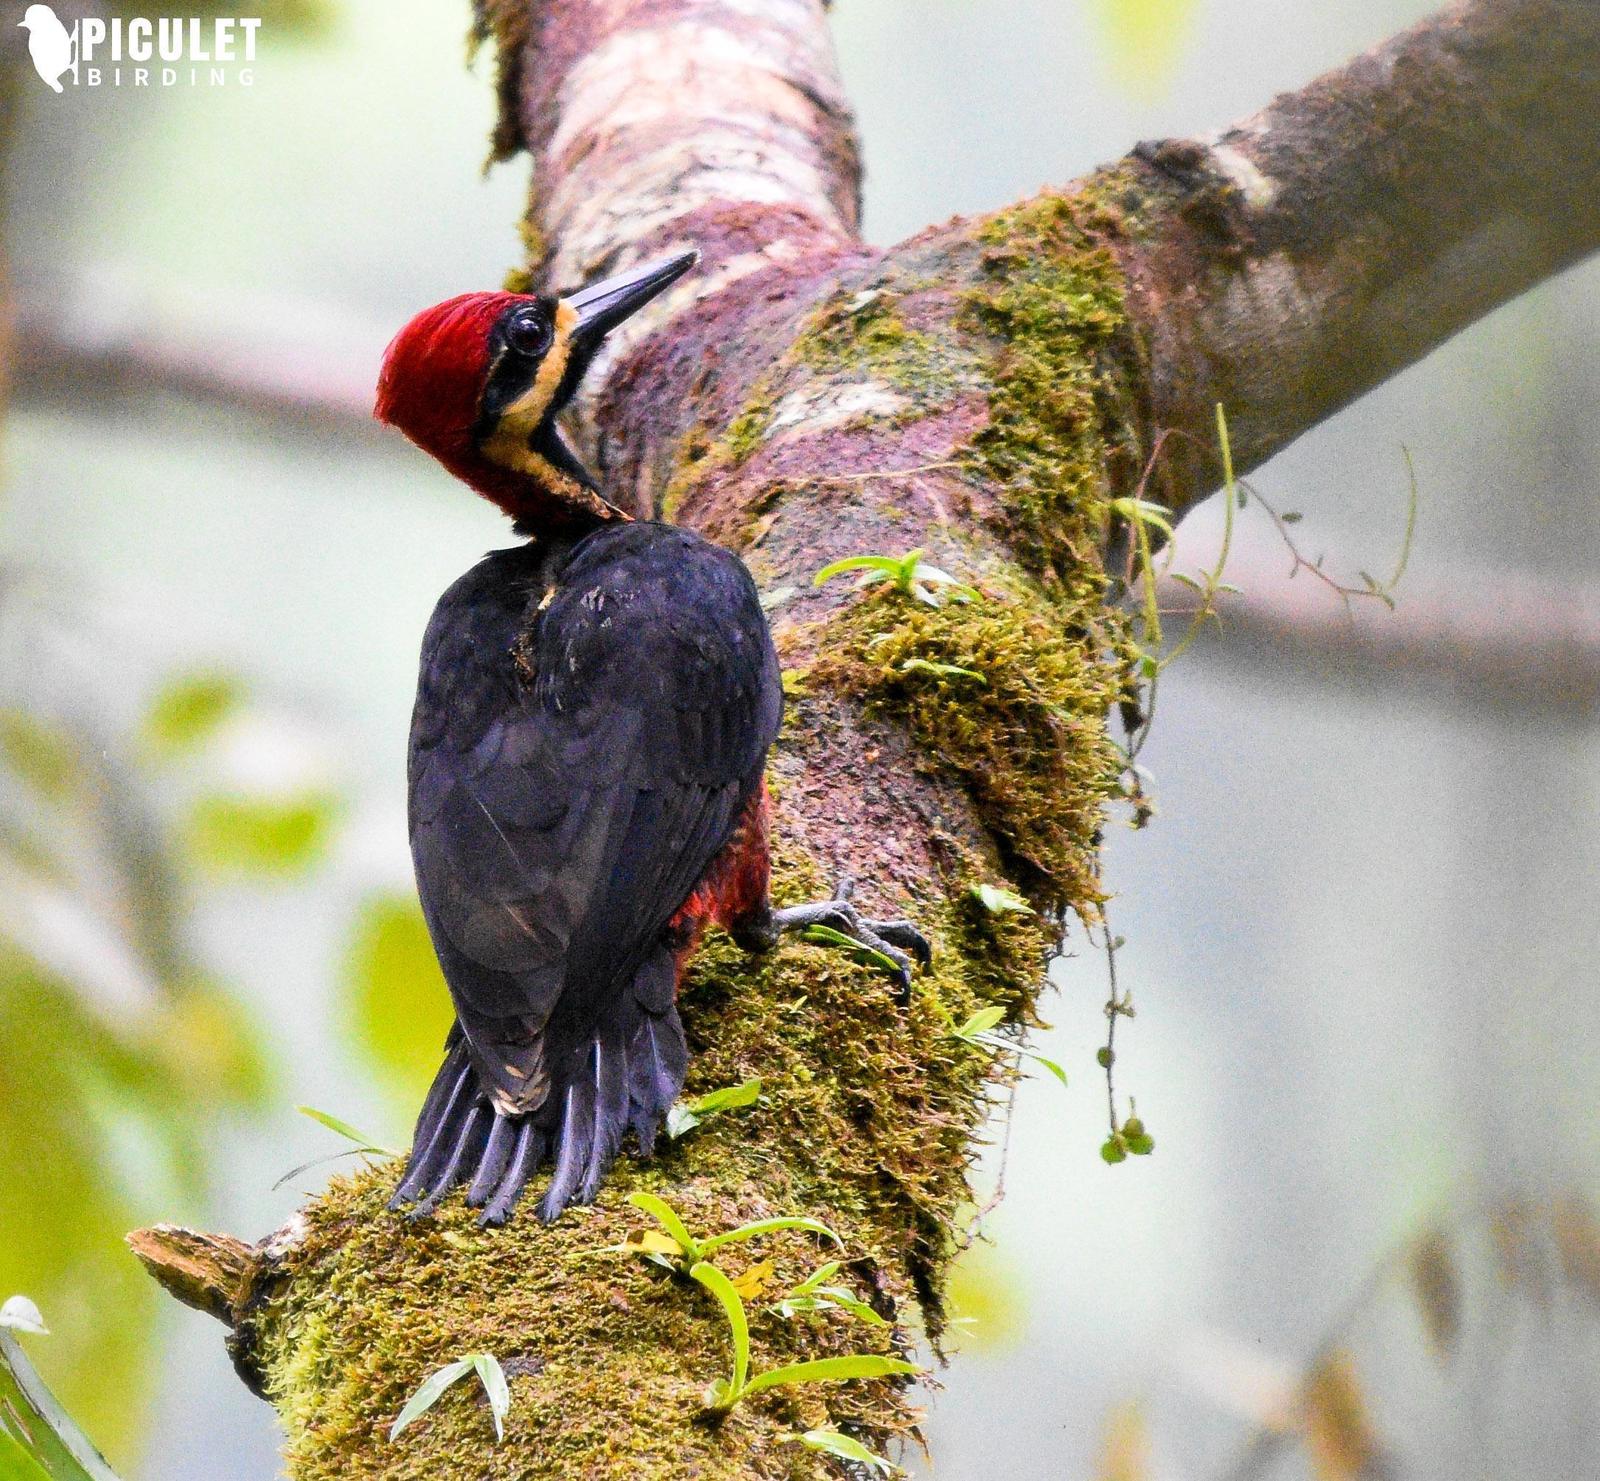 Crimson-bellied Woodpecker Photo by Julio Delgado